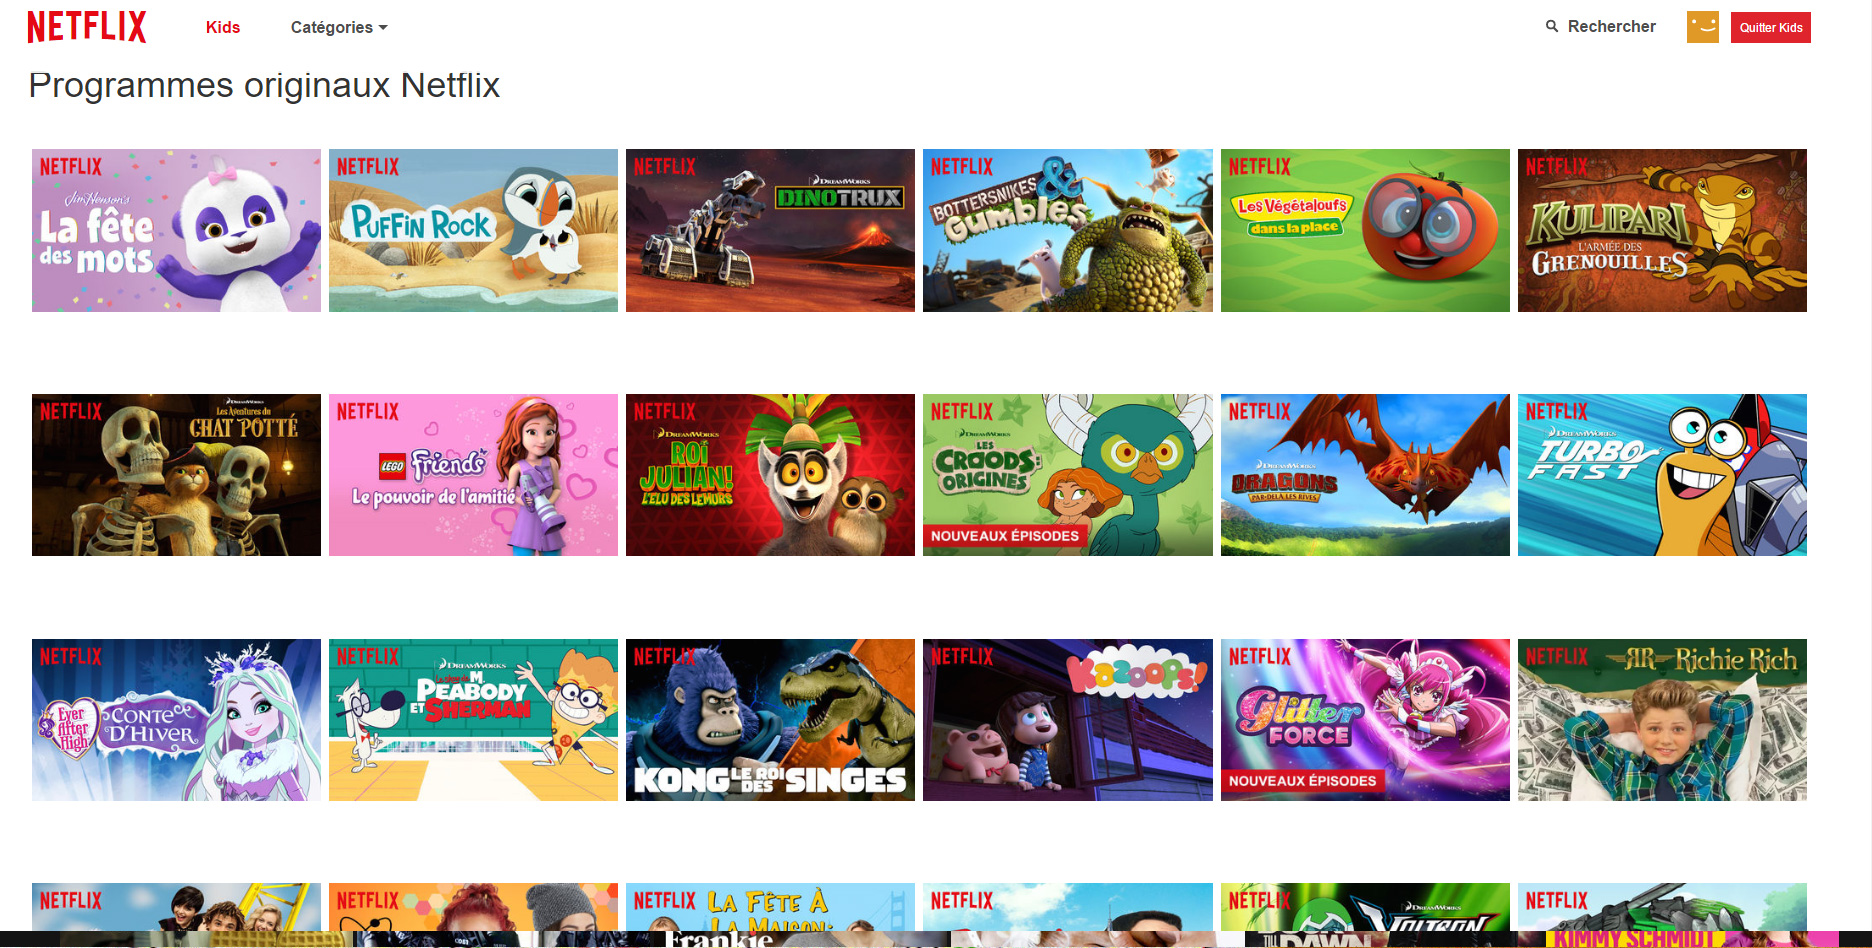 Netflix Kids a perdu les droits de Disney en France, mais de nombreux dessins animés produits ou co-produits par Netflix sont proposés.